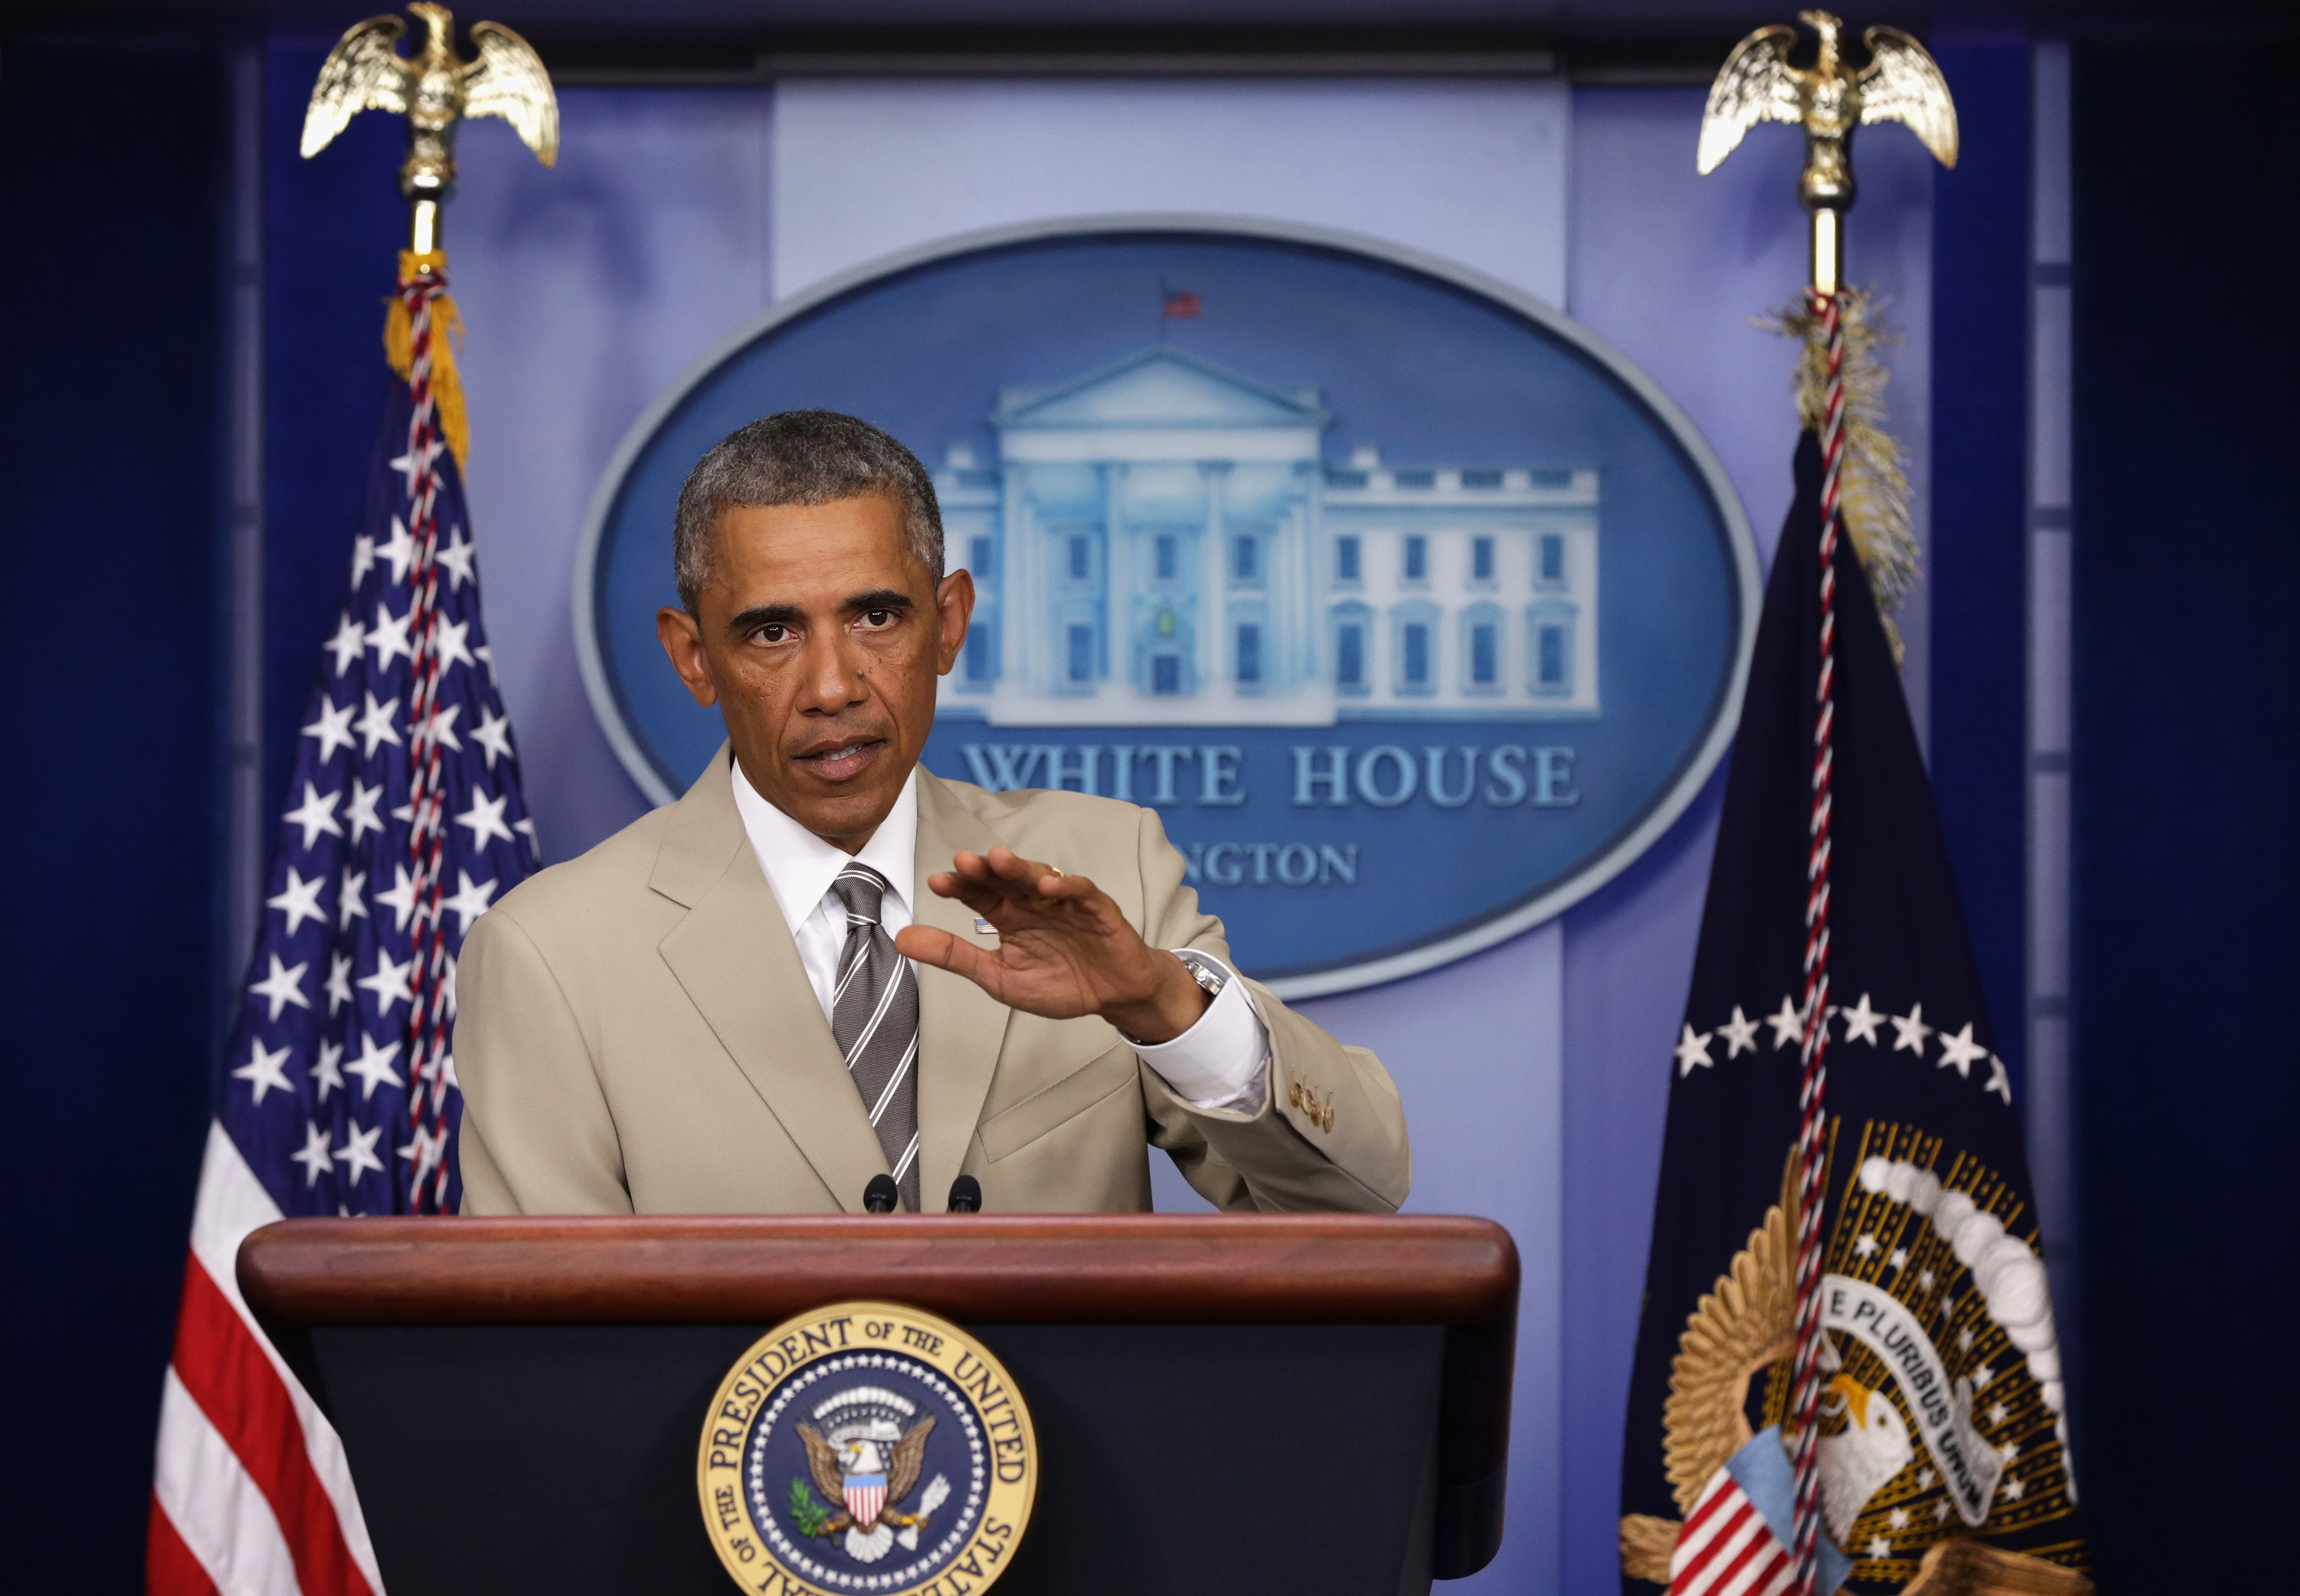 Barack Obama behind the podium